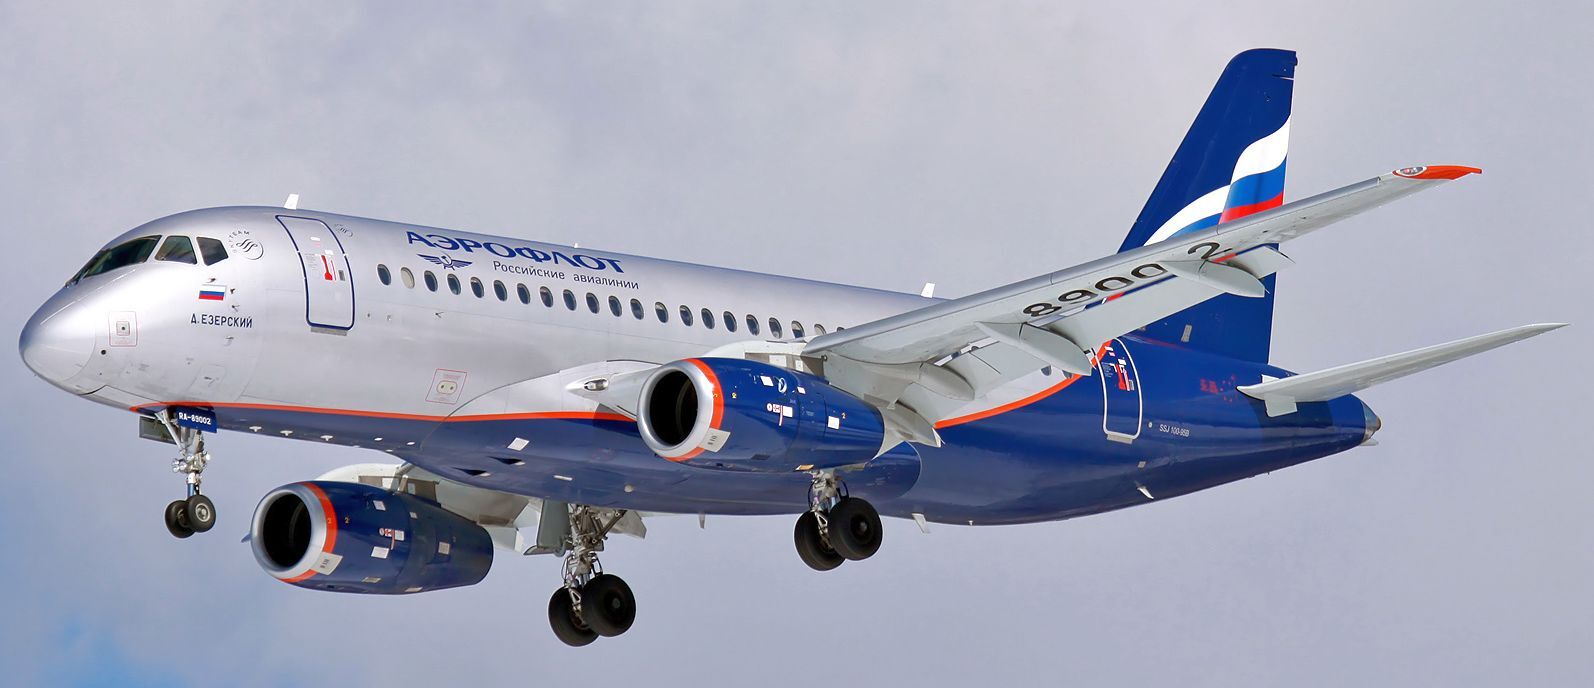 Aeroflot Sukhoi Superjet 100 RA-8900 Aircraft Wood Model Replica 